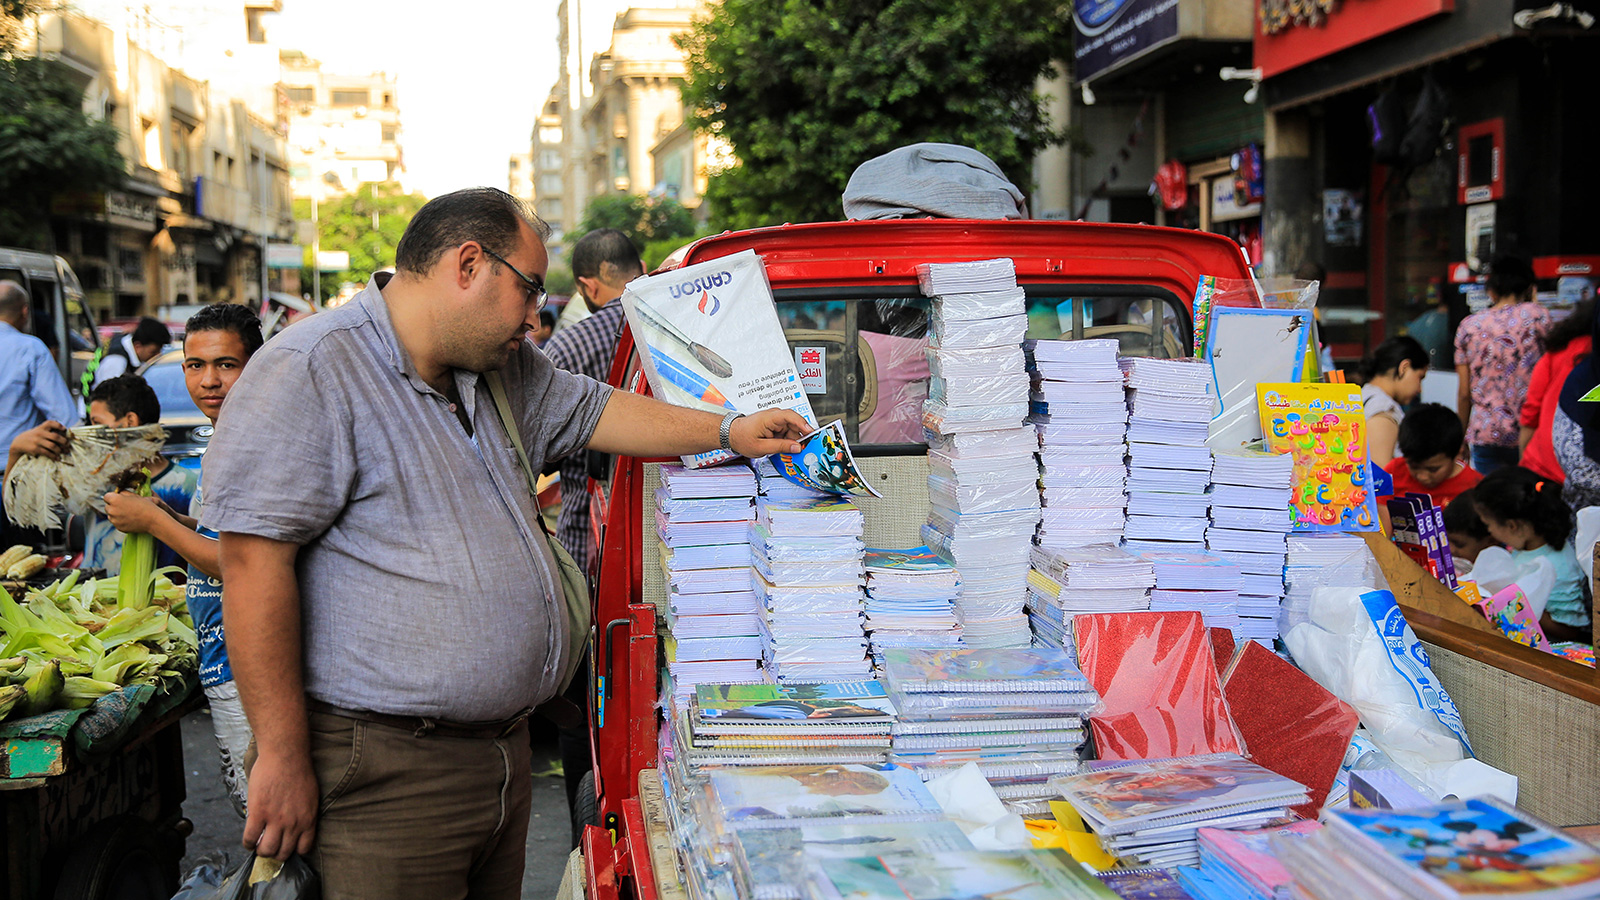 في ظل ارتفاع الأسعار تلجأ كثير من الأسر المصرية إلى شارع الفجالة لشراء الأدوات المدرسية بأسعار معقولة (وكالة الأناضول)